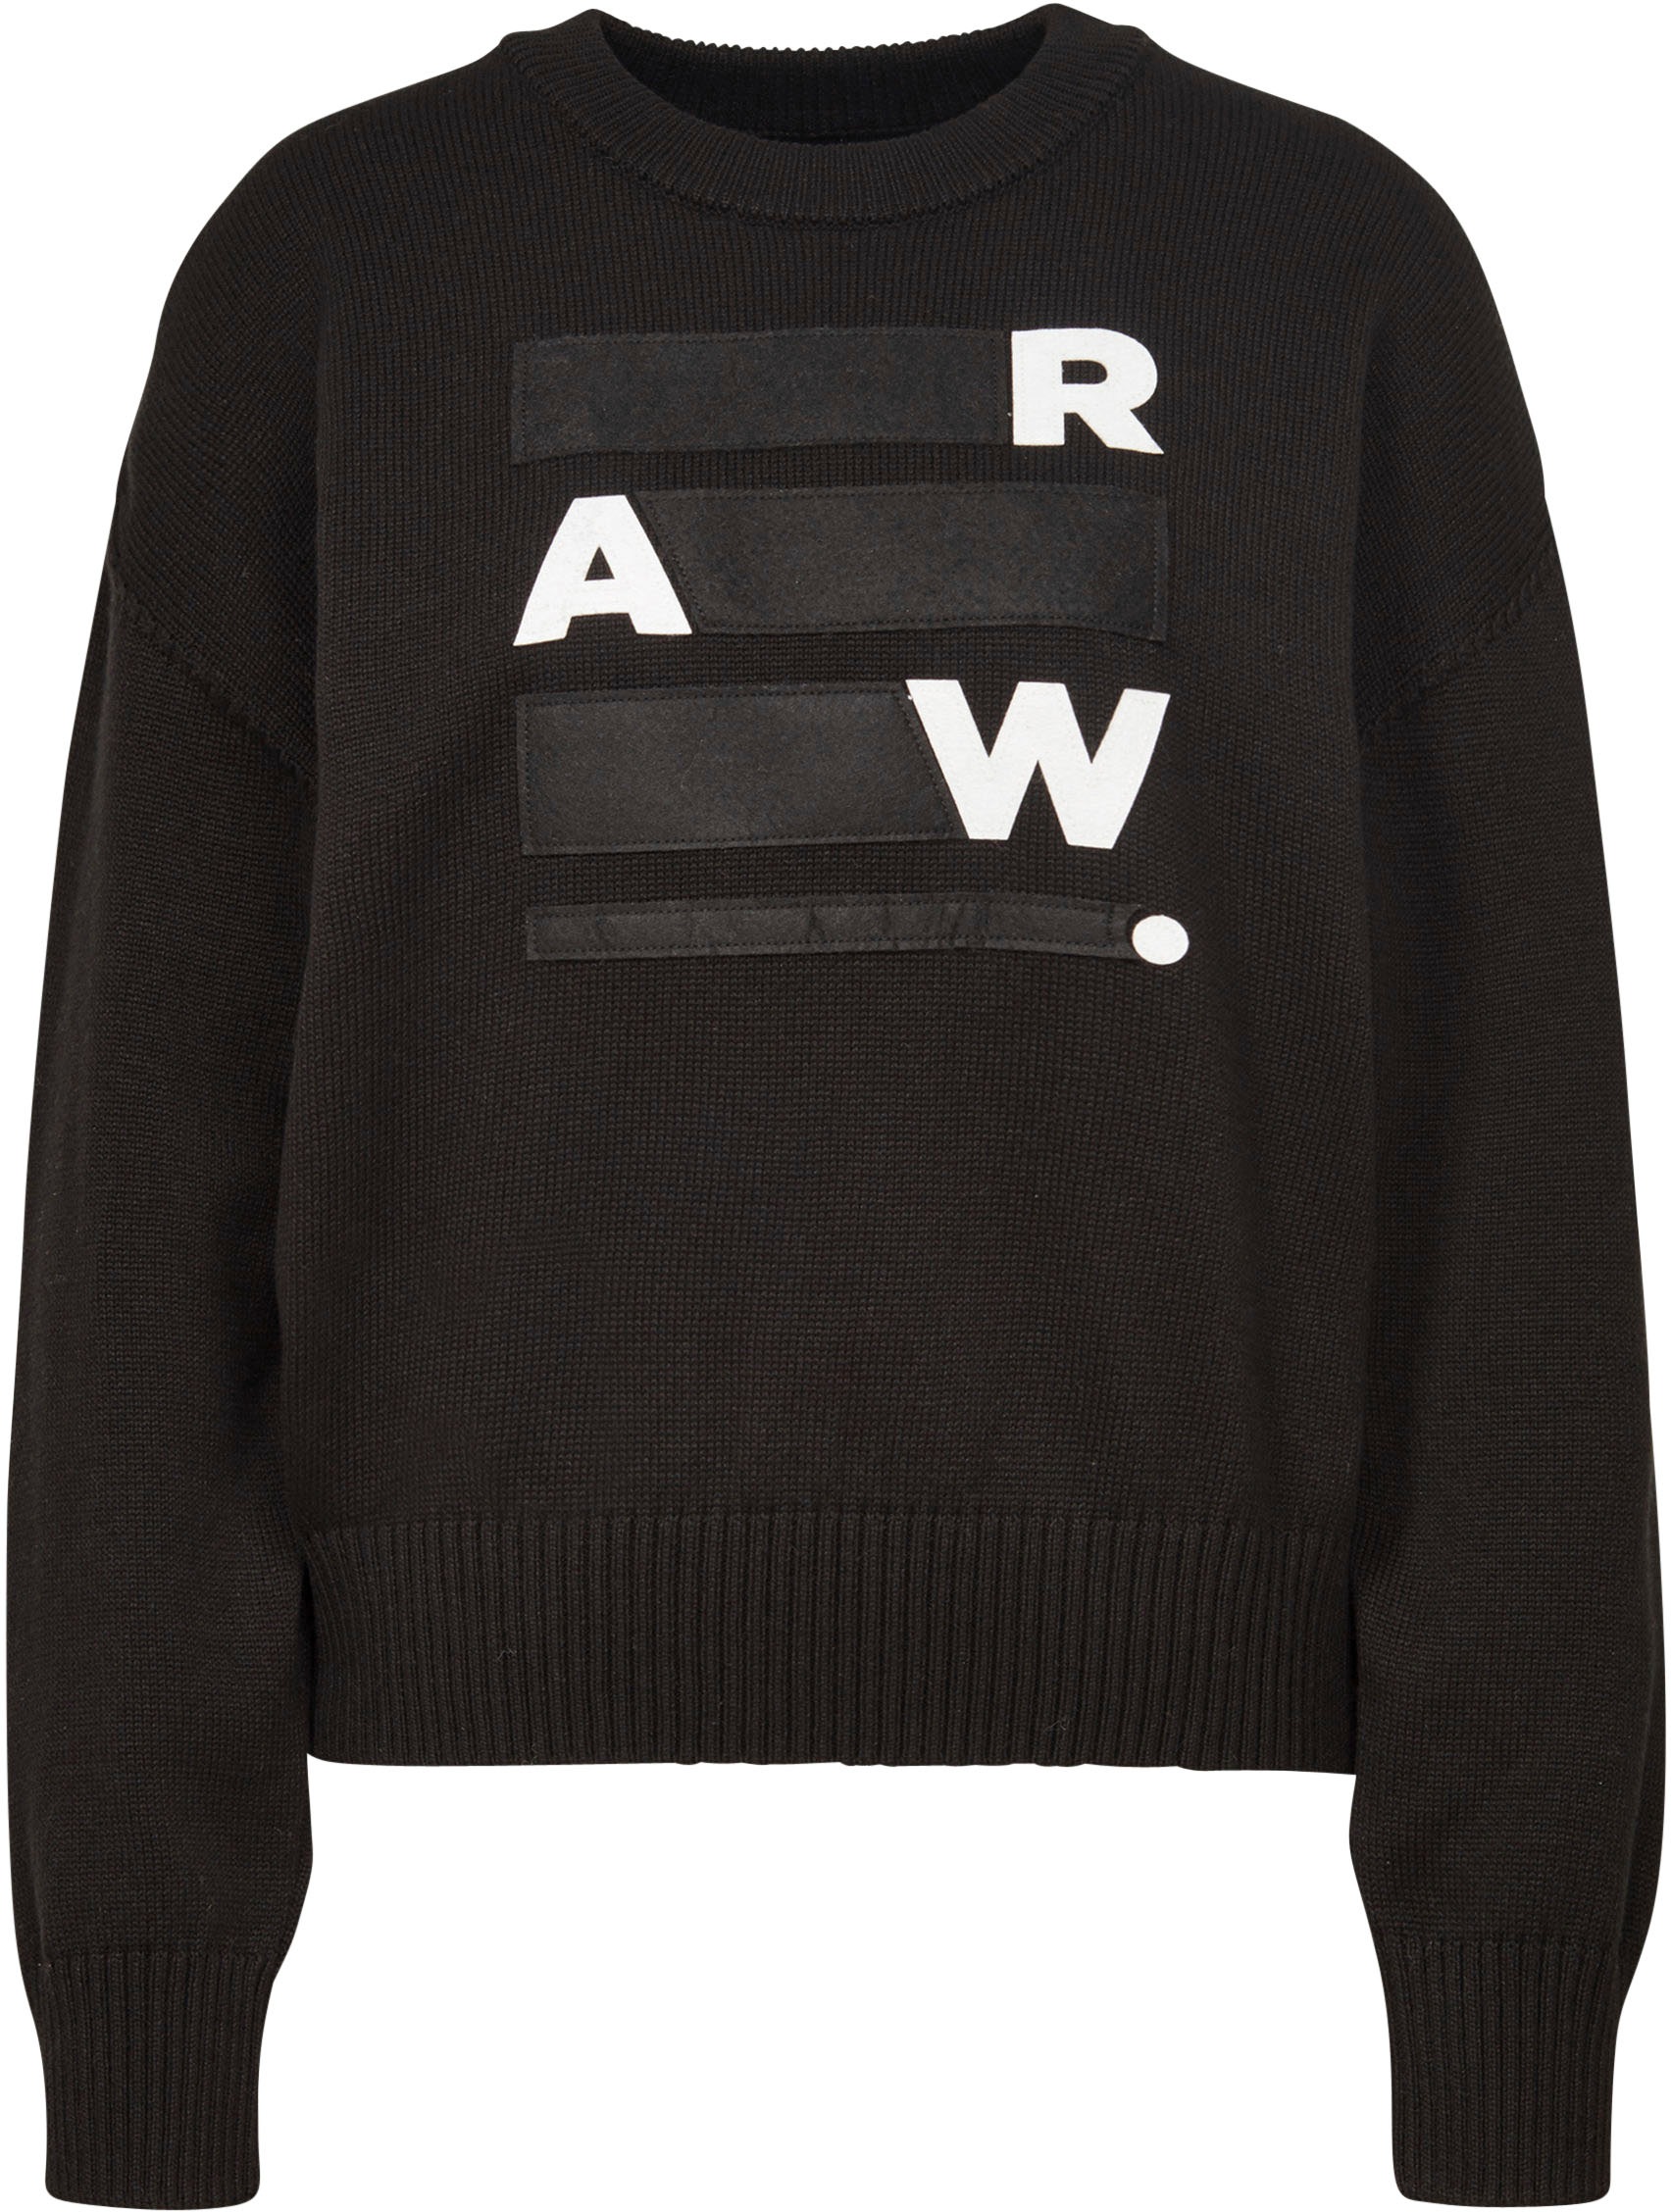 G Star Raw Sweatshirt Raw Space Gr Bf R Knit Mit Grosser Logo Applikation Vorne Baur